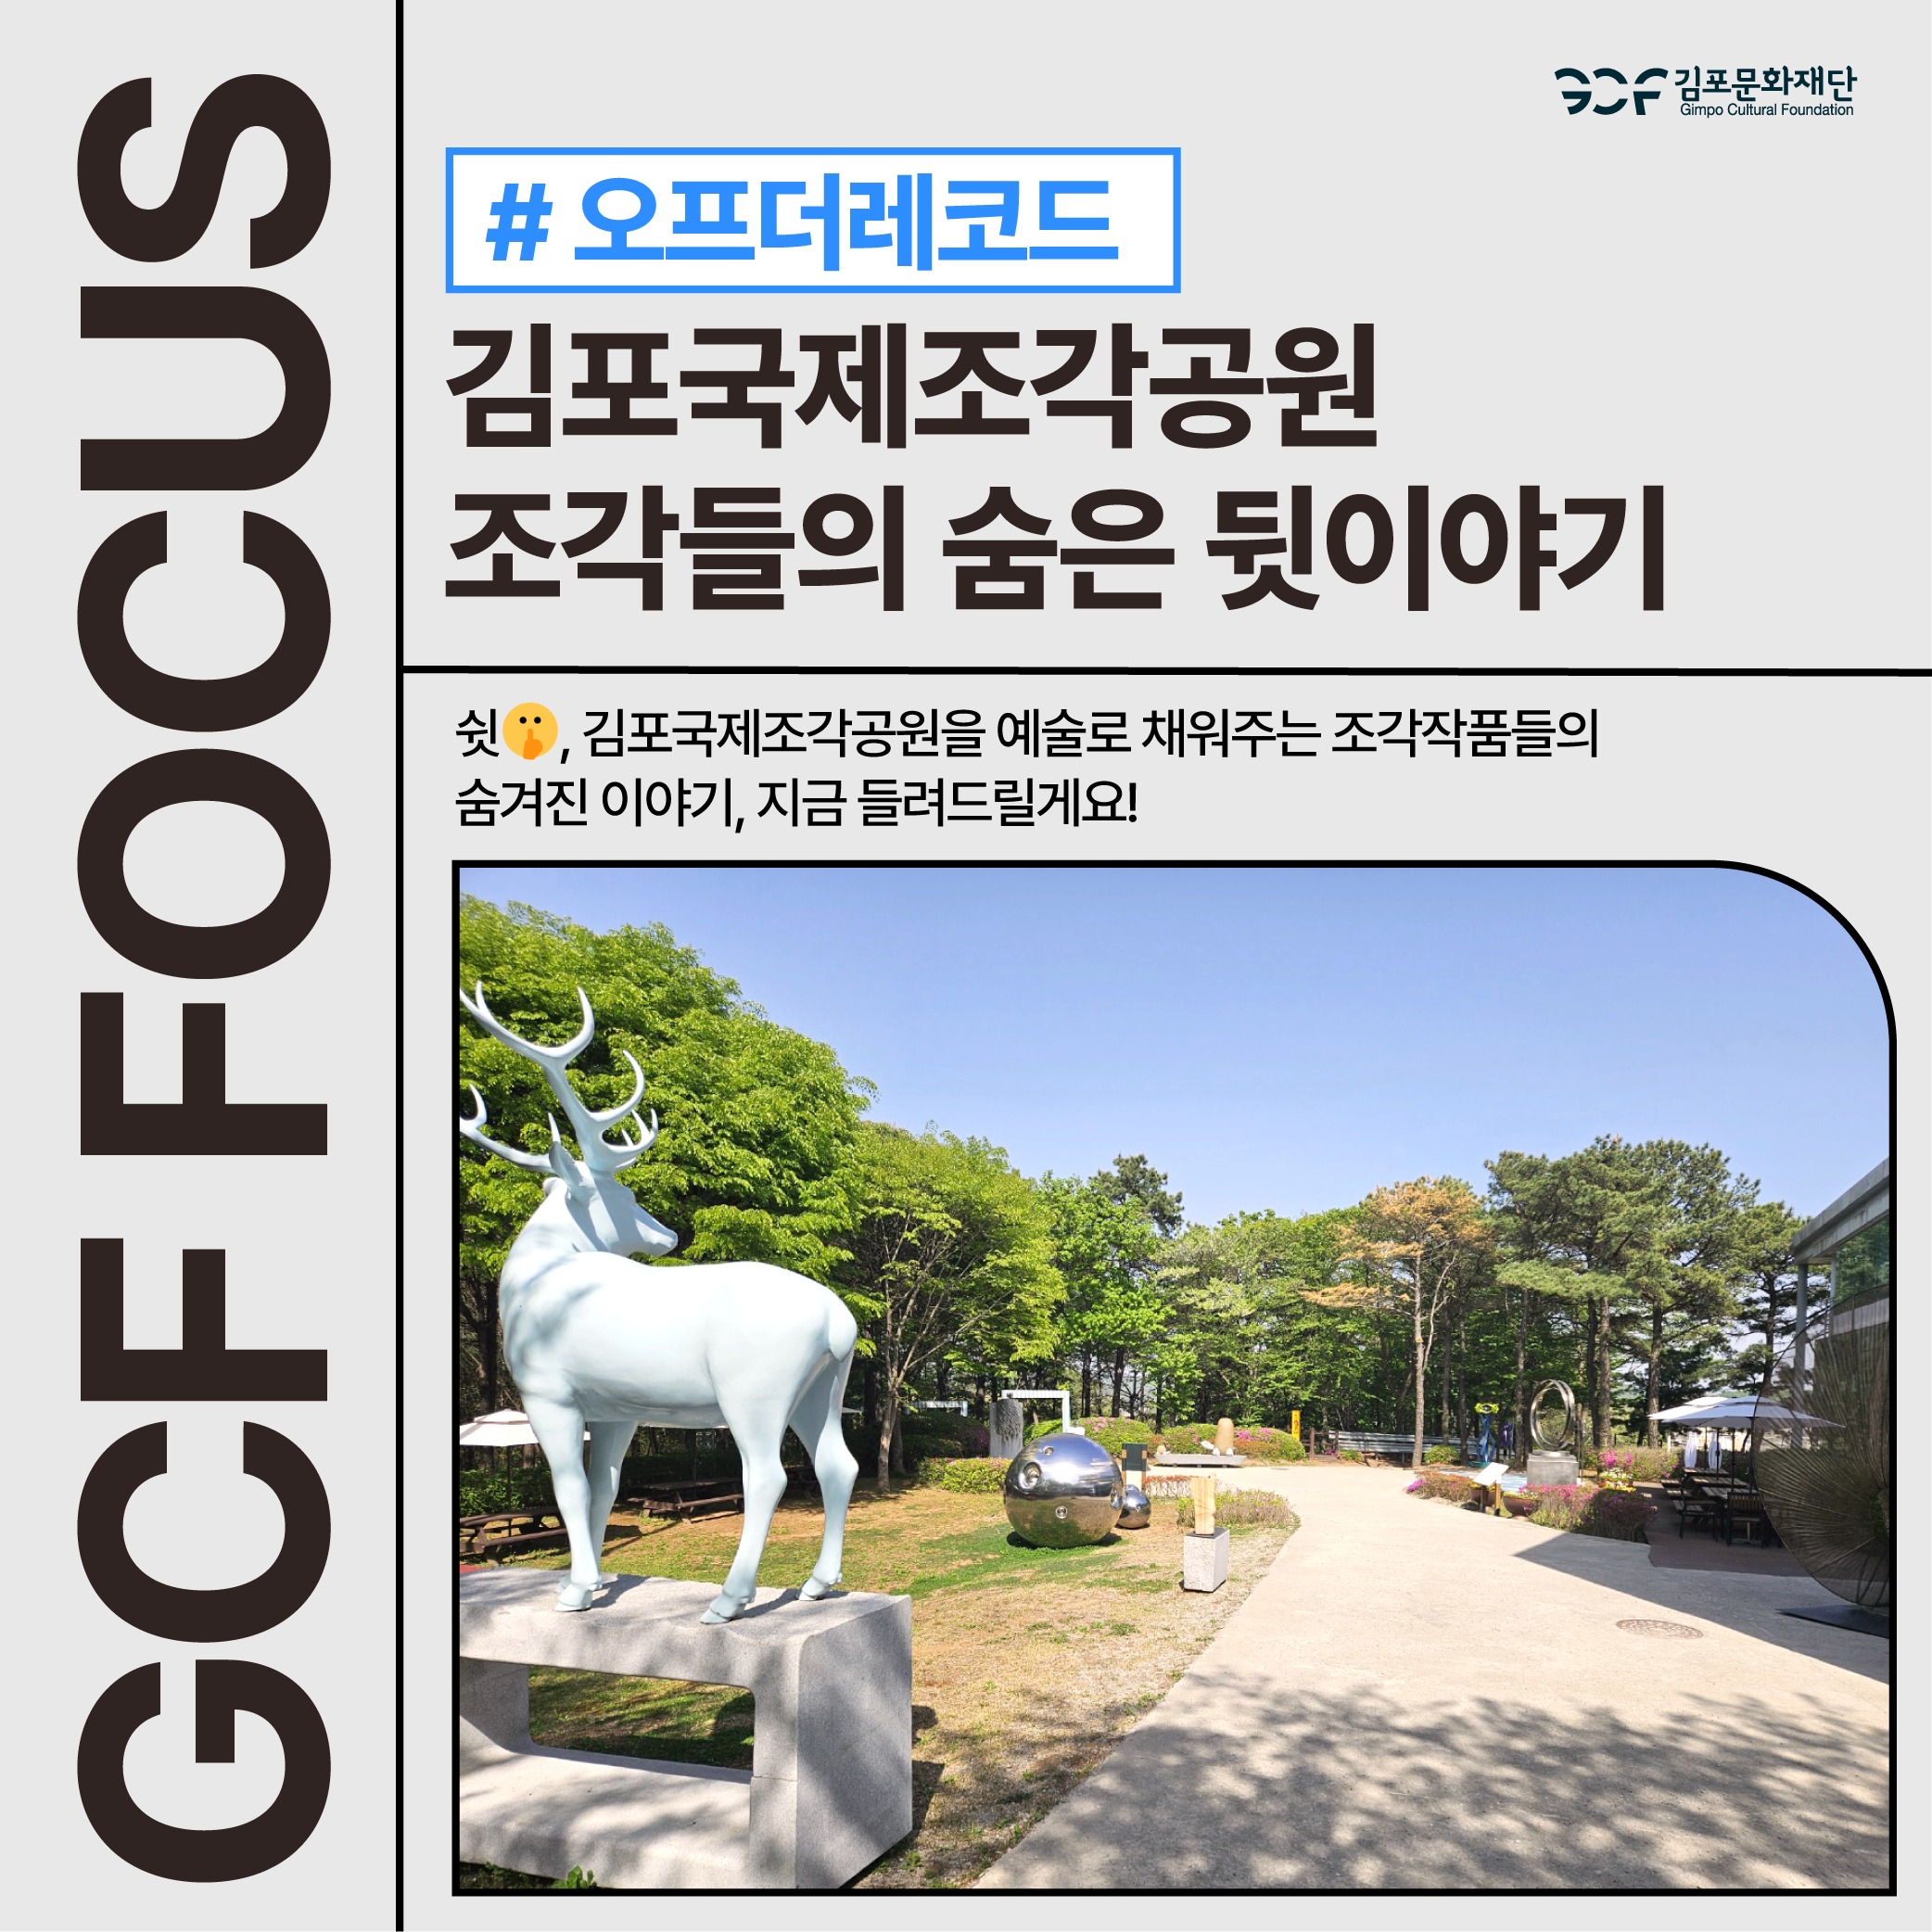 김포국제조각공원 조각들의 숨겨진 이야기, 지금 들려드릴게요!